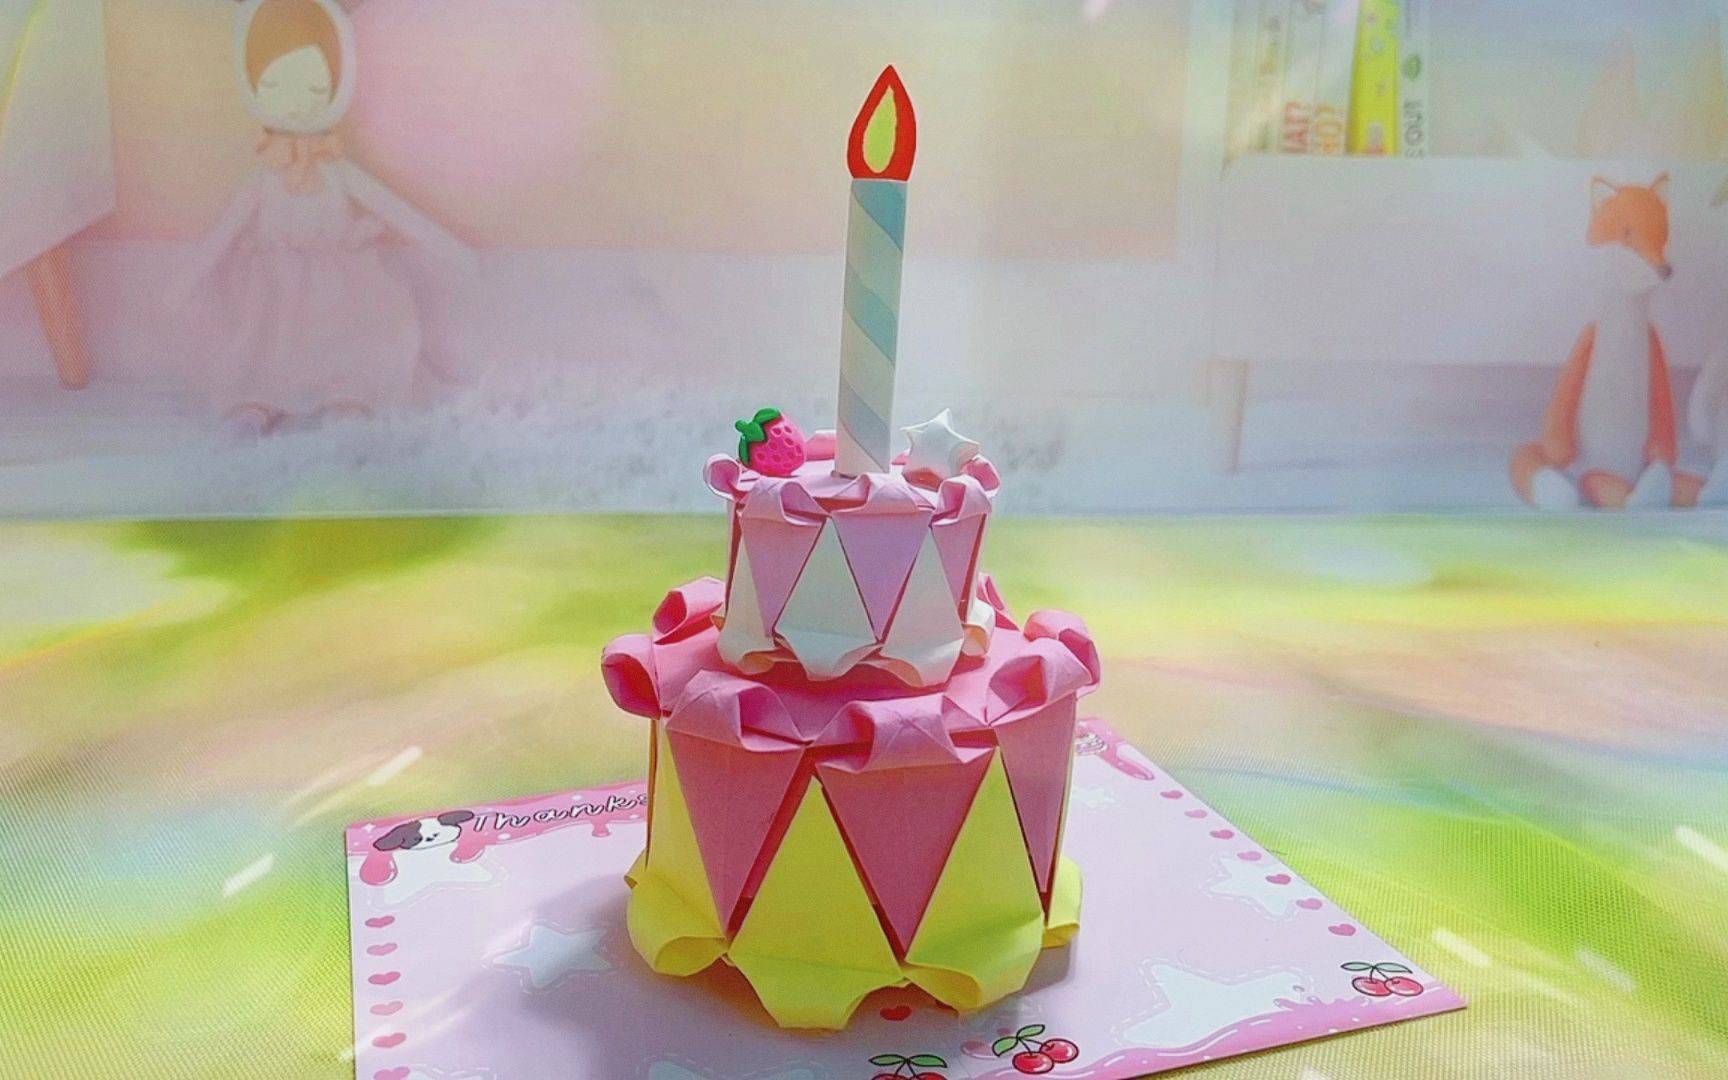 彩纸做了个双层小蛋糕,还有生日蜡烛哦